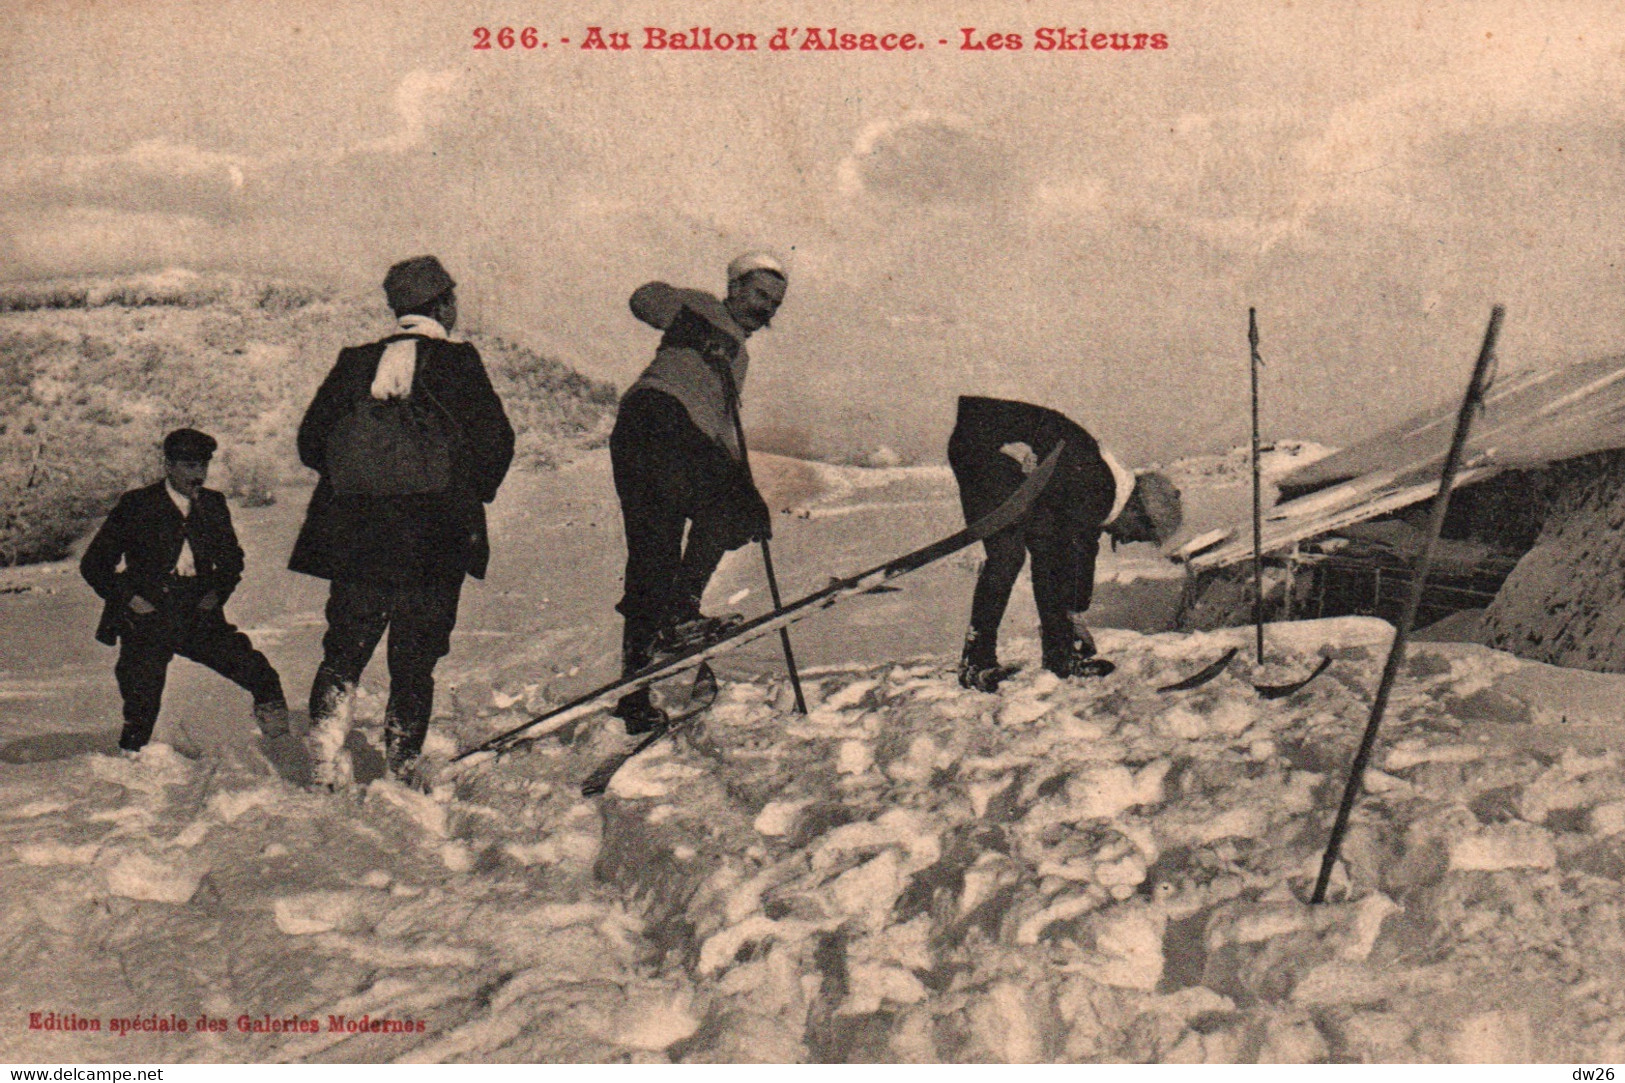 Sports D'hiver Dans Les Vosges - Ski: Les Skieurs Au Ballon D'Alsace - Edition Galeries Modernes - Carte N° 266 - Wintersport